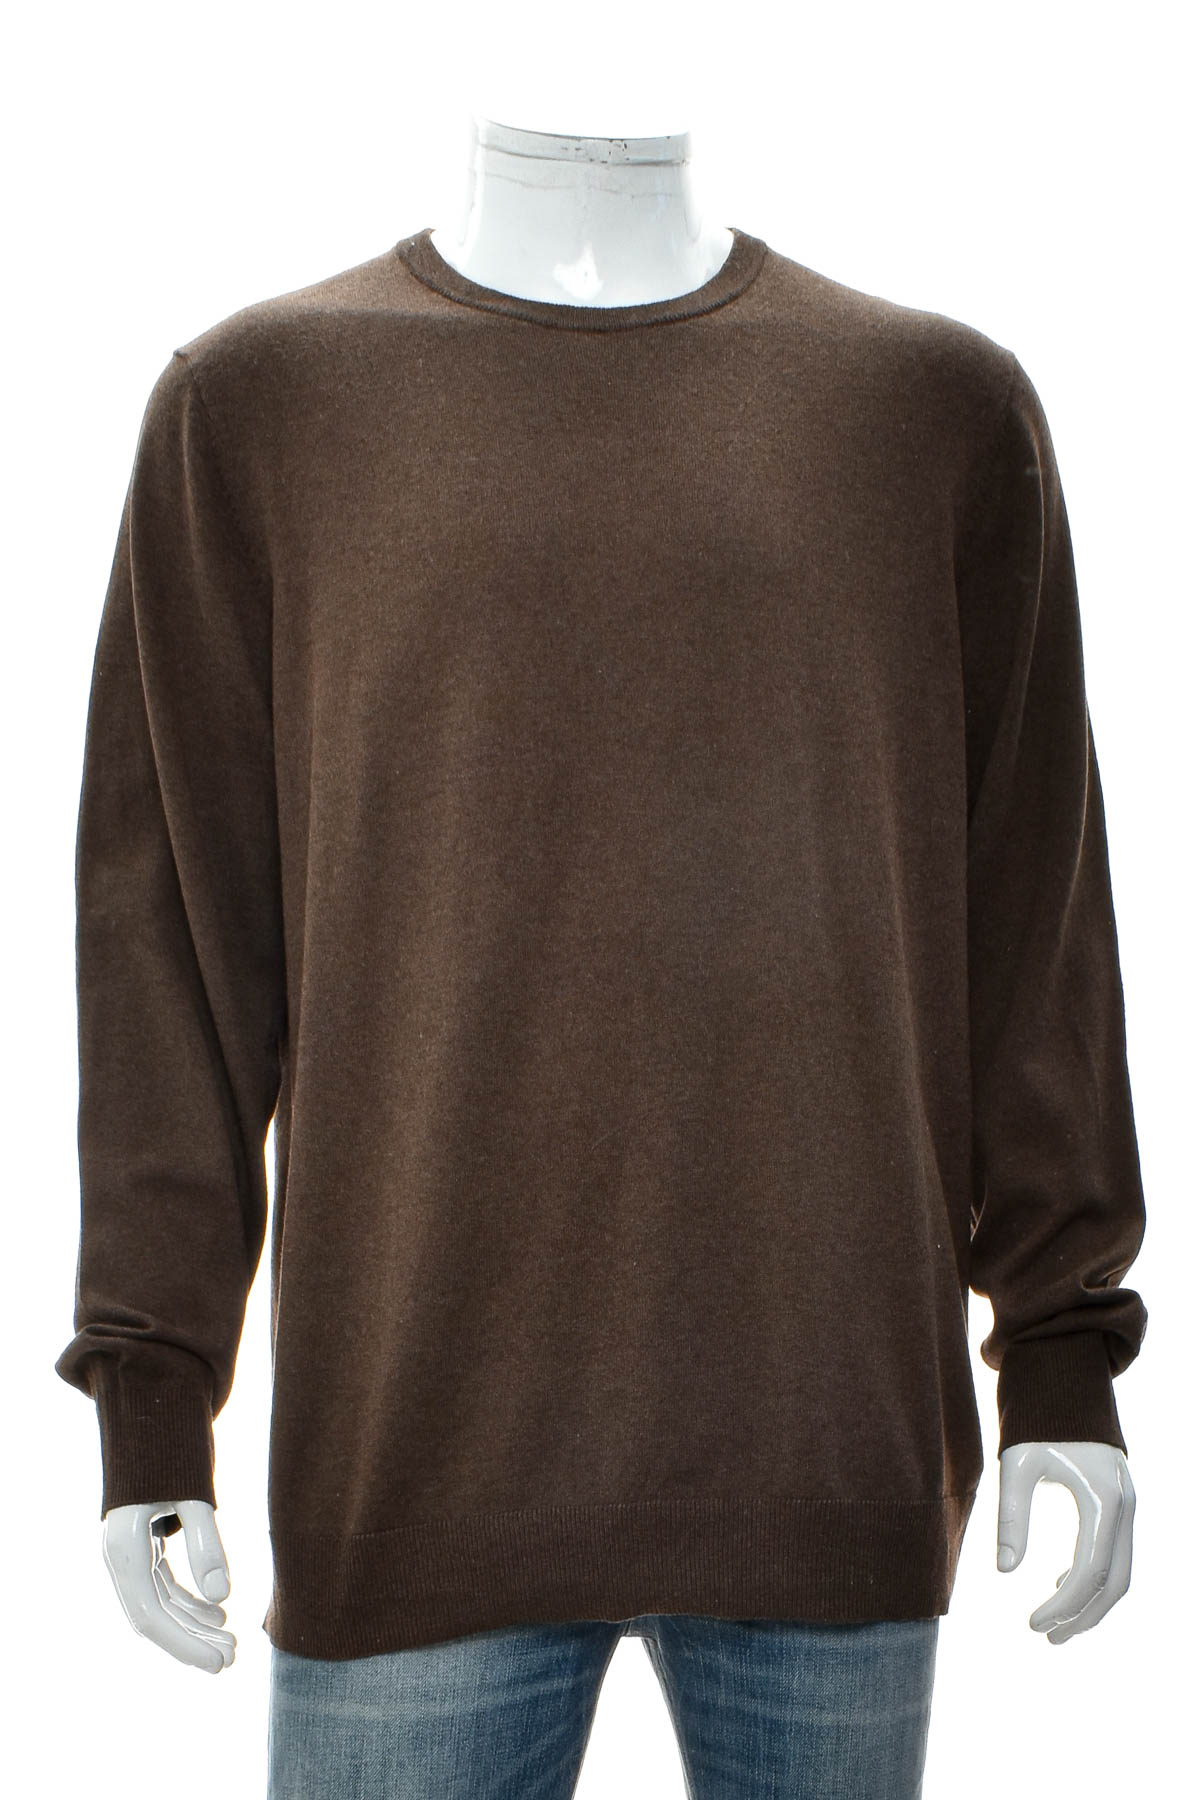 Men's sweater - OLD NAVY - 0